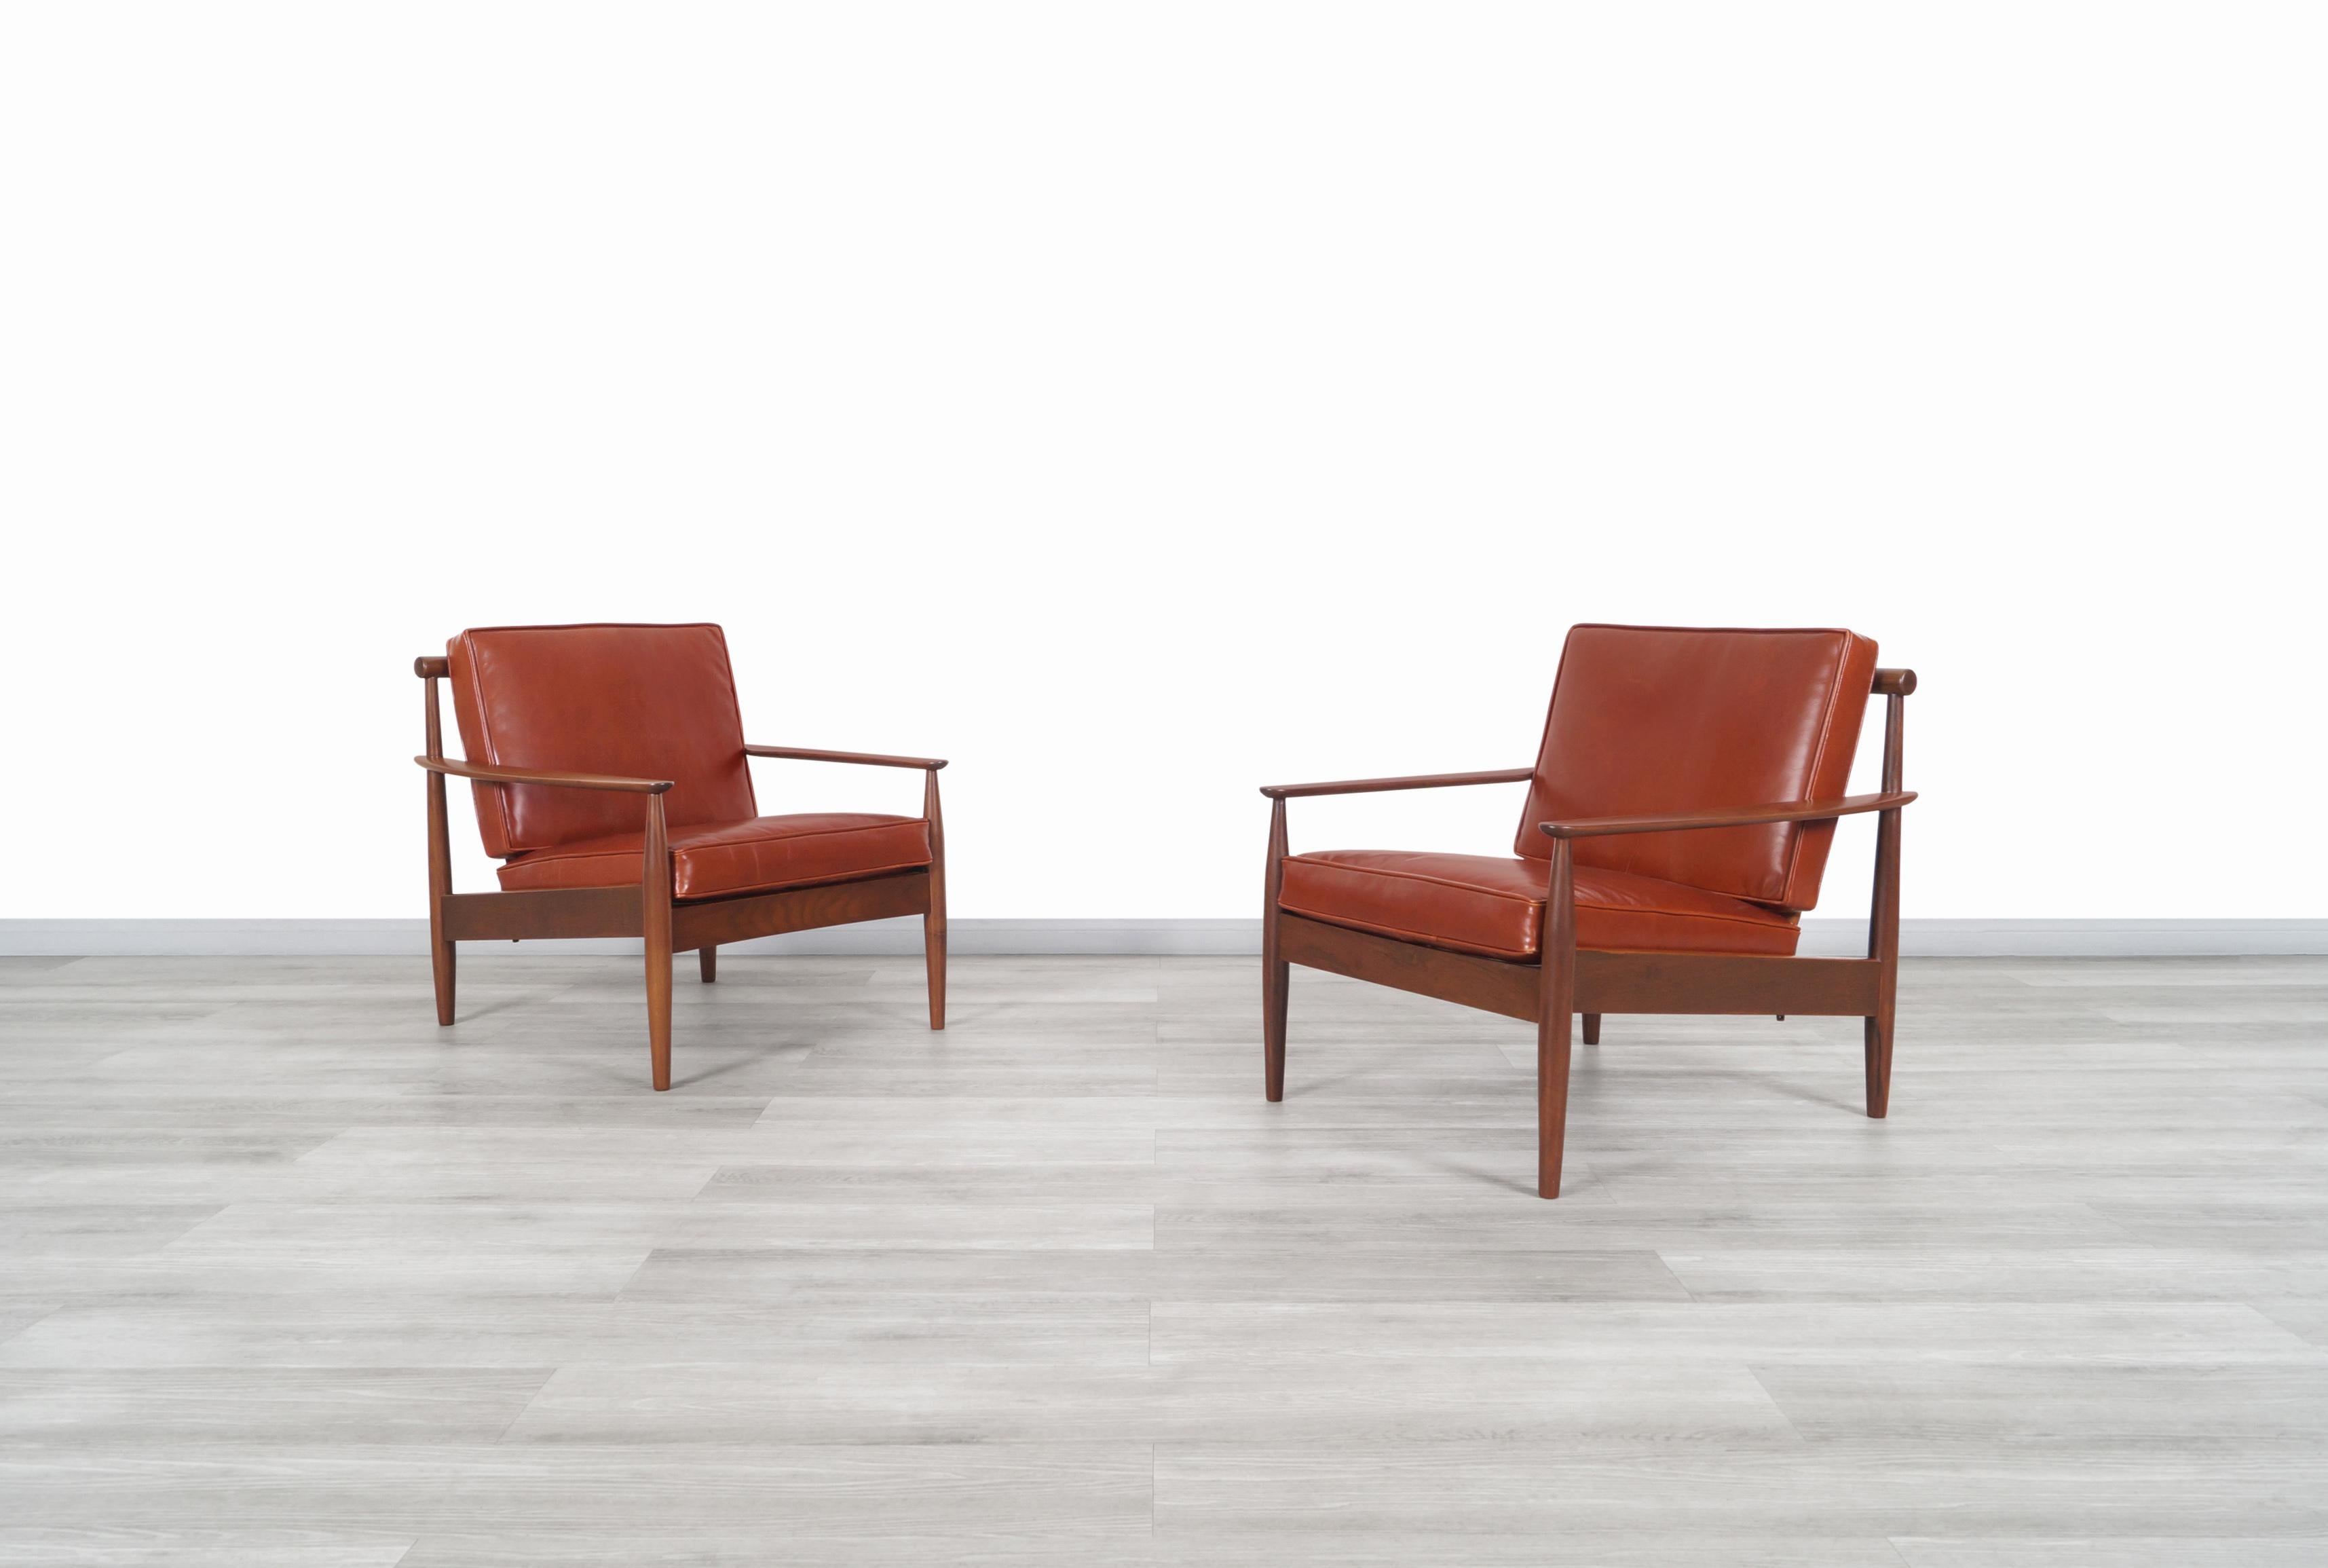 Exceptionnelles chaises de salon danoises modernes en cuir et en noyer conçues par Hans C.Andersen au Danemark et importées par Gunnar Schwartz, vers les années 1960. Ces chaises rares ont un design qui allie parfaitement confort et élégance dans